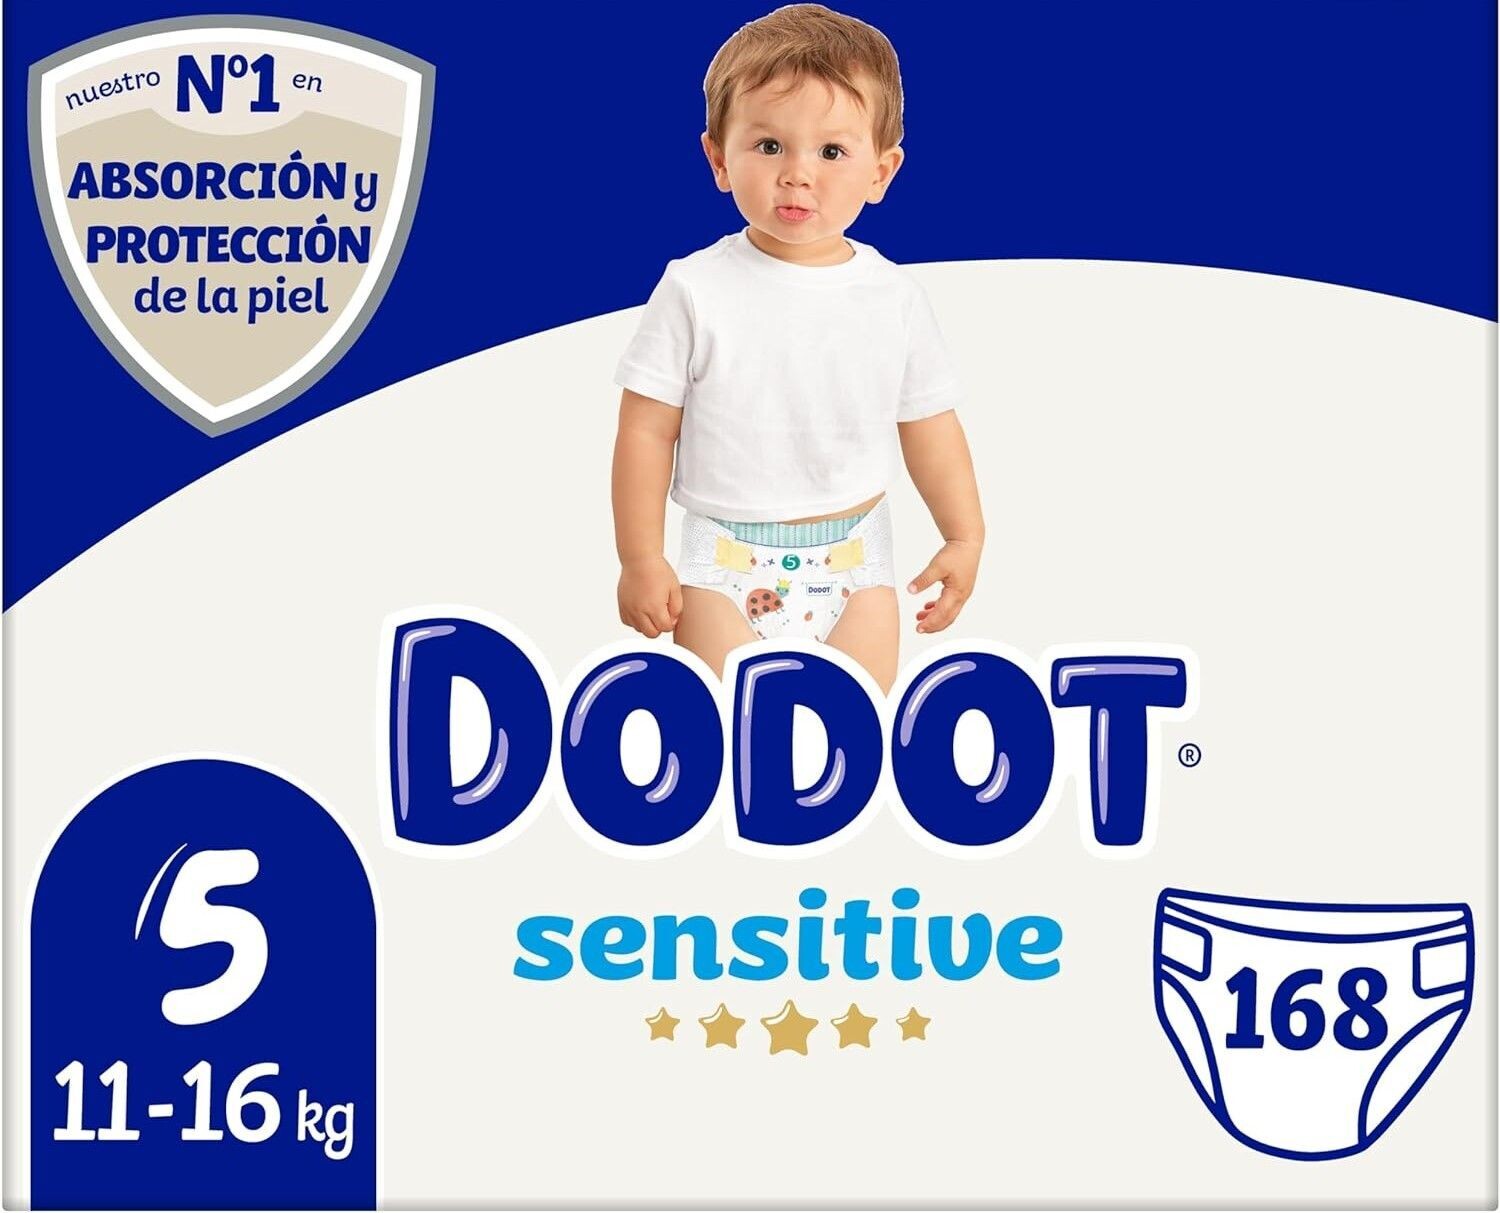 Dodot Pañales Bebé Sensitive Talla 5 (11-16 kg), 168 Pañales Óptima  Protección de la Piel de Dodot, paquete Mensual